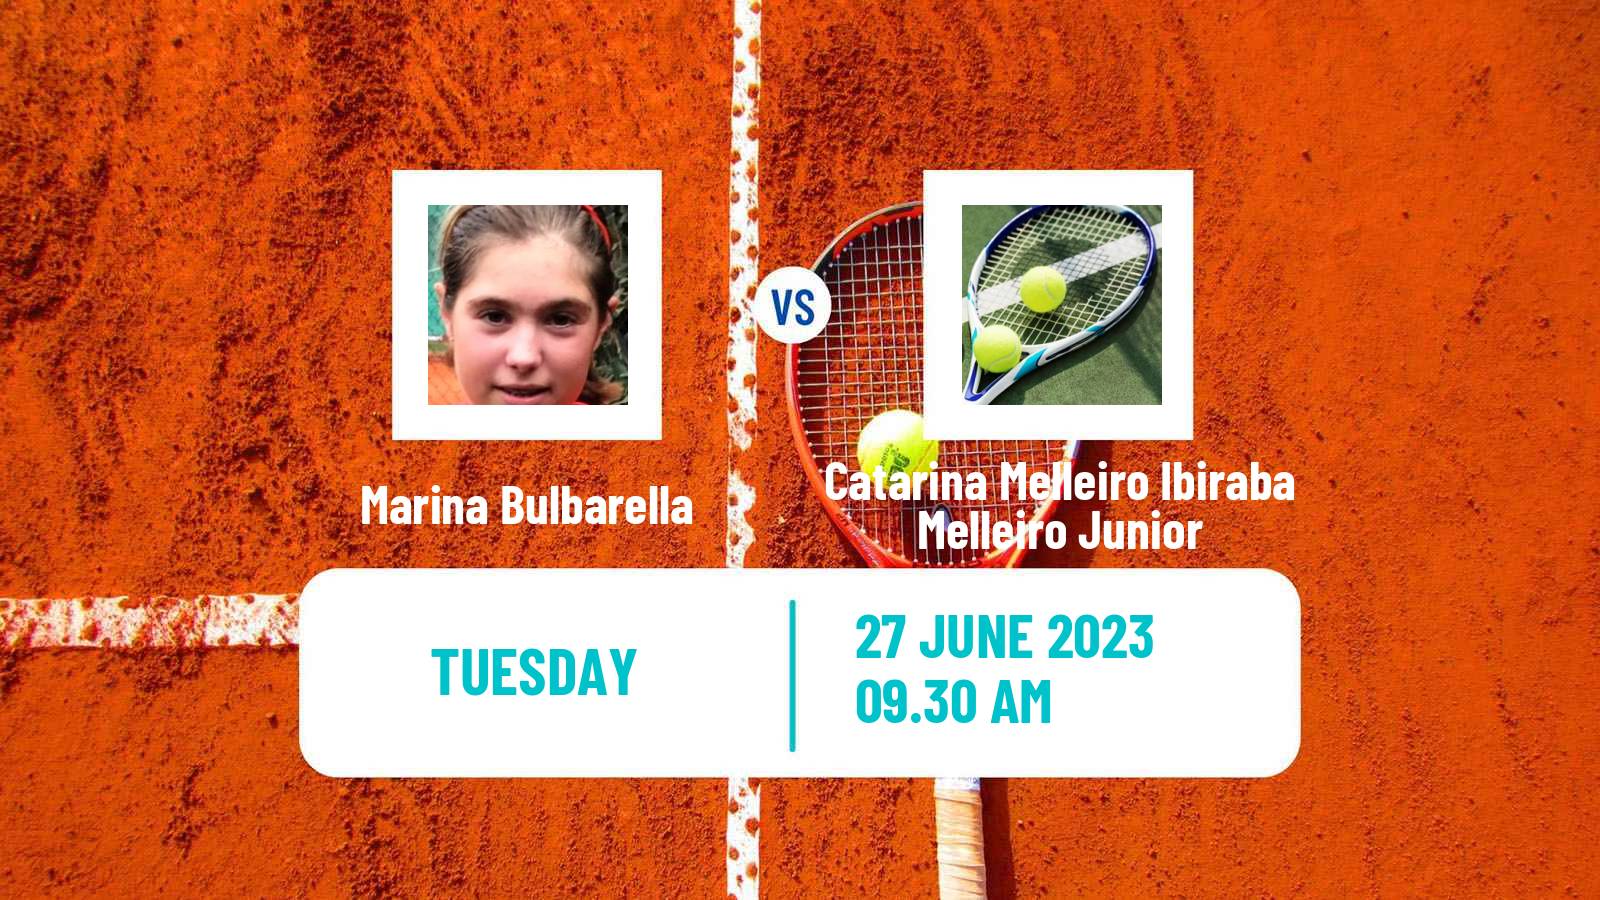 Tennis ITF W15 Rosario Santa Fe Women Marina Bulbarella - Catarina Melleiro Ibiraba Melleiro Junior